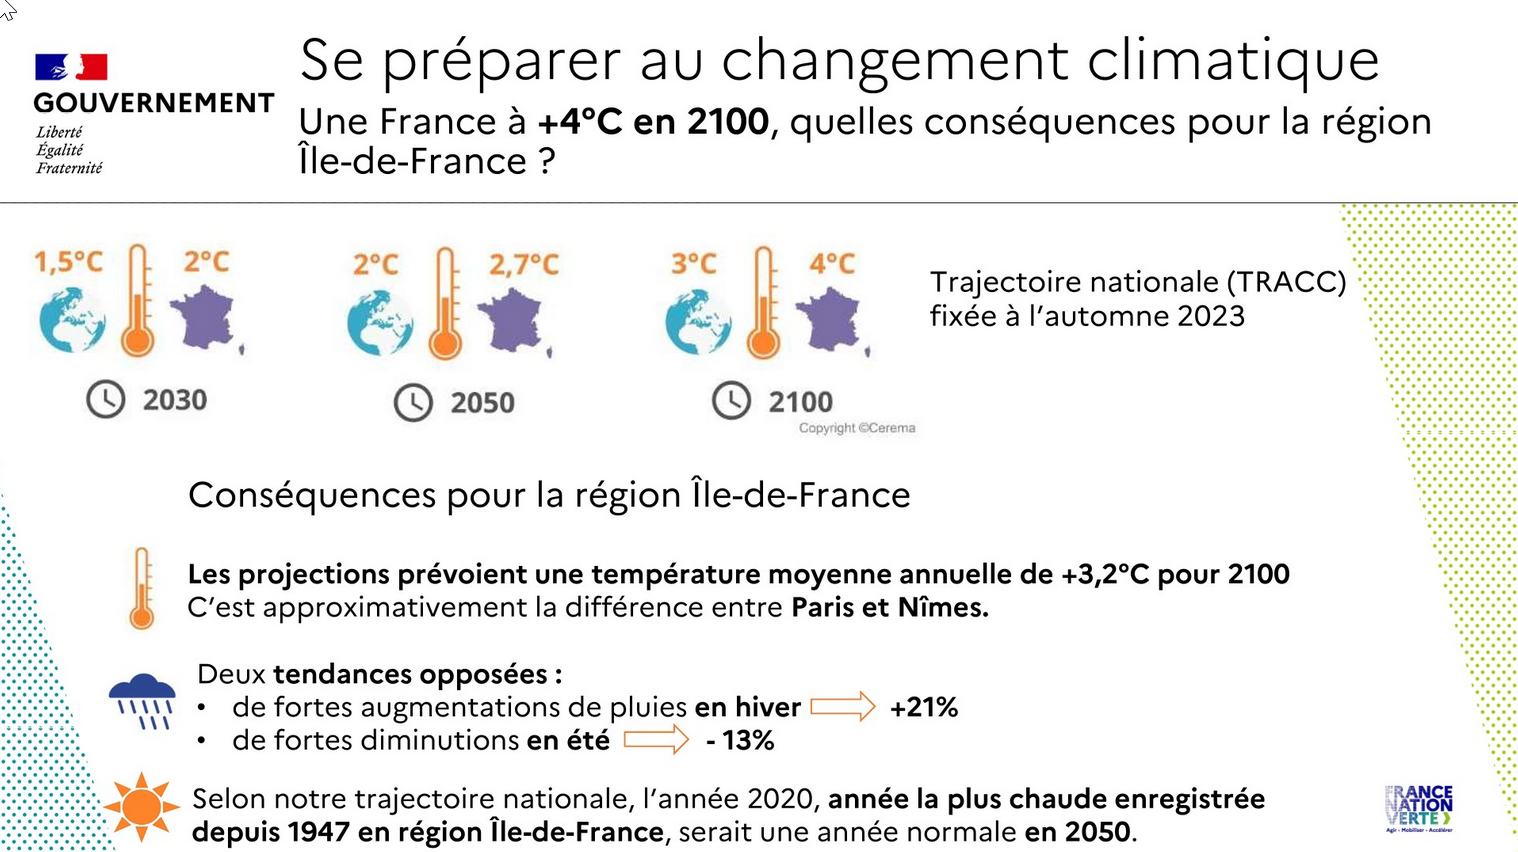 Le climant de l'Ile-de-France en 2100